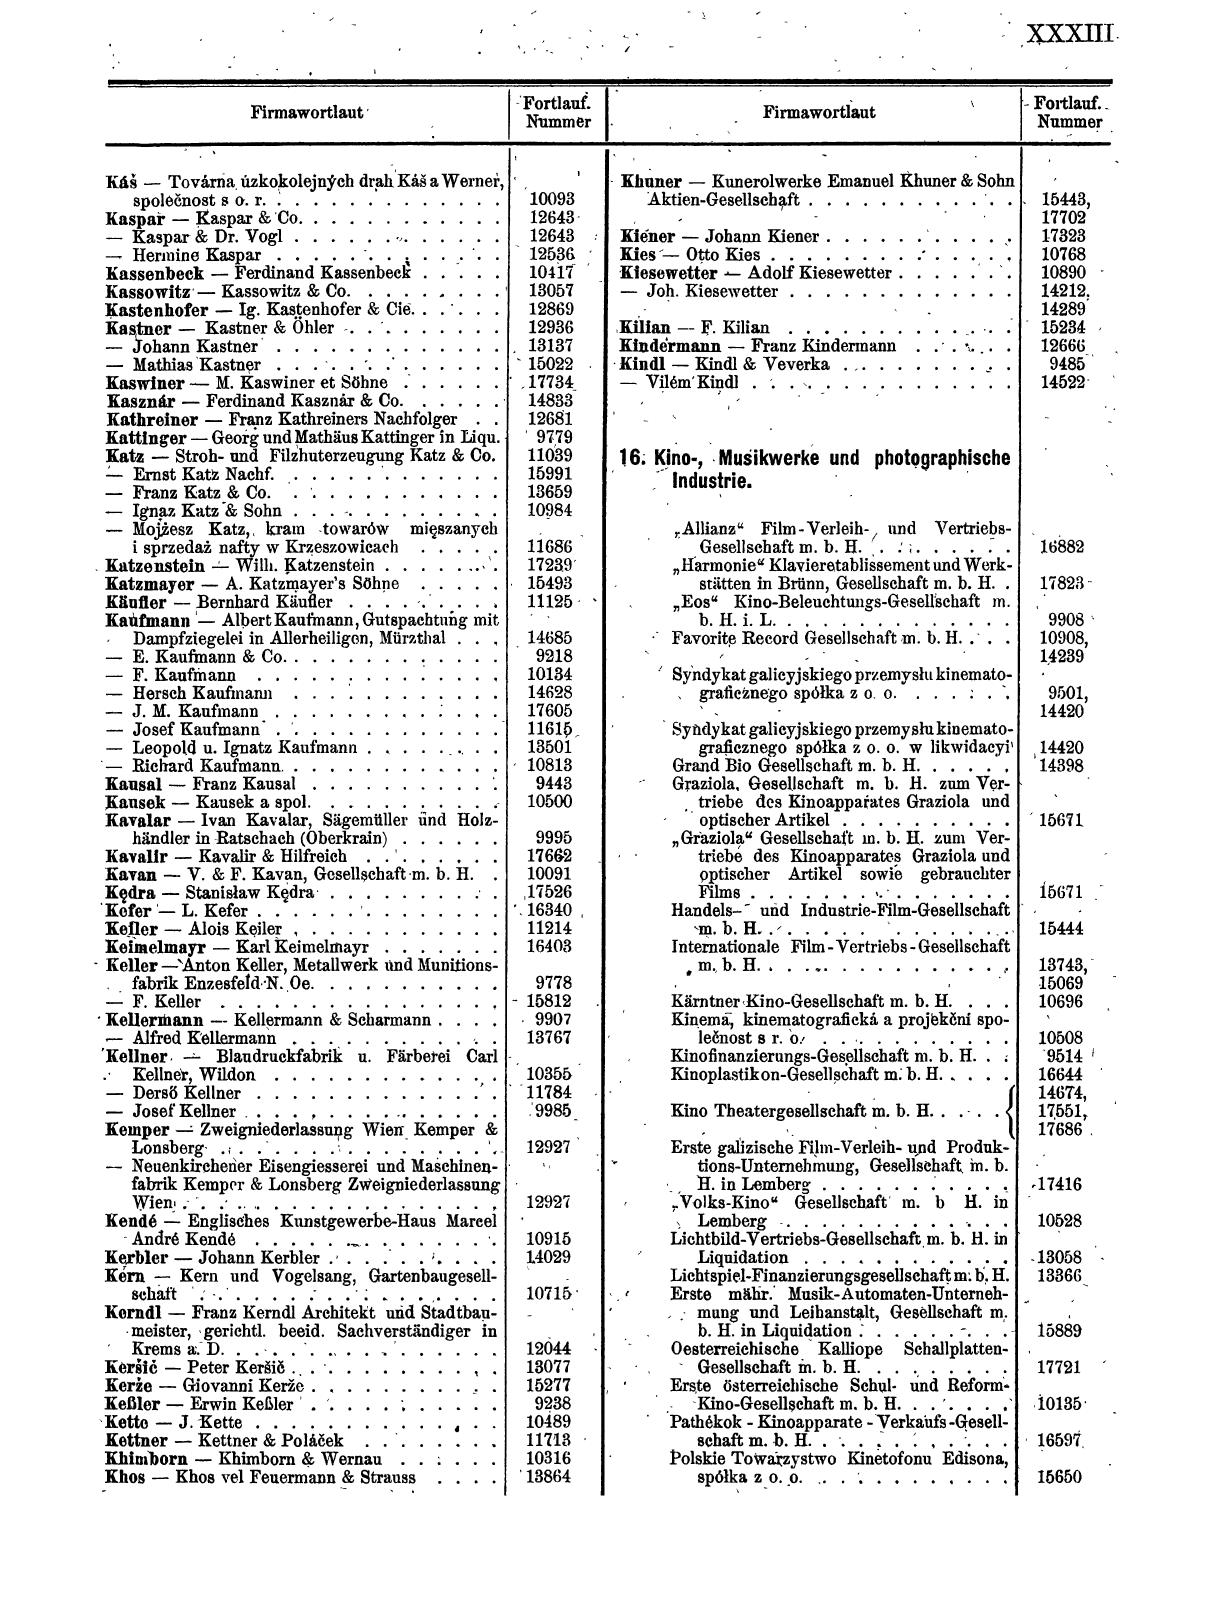 Zentralblatt für die Eintragungen in das Handelsregister 1913, Teil 2 - Seite 37